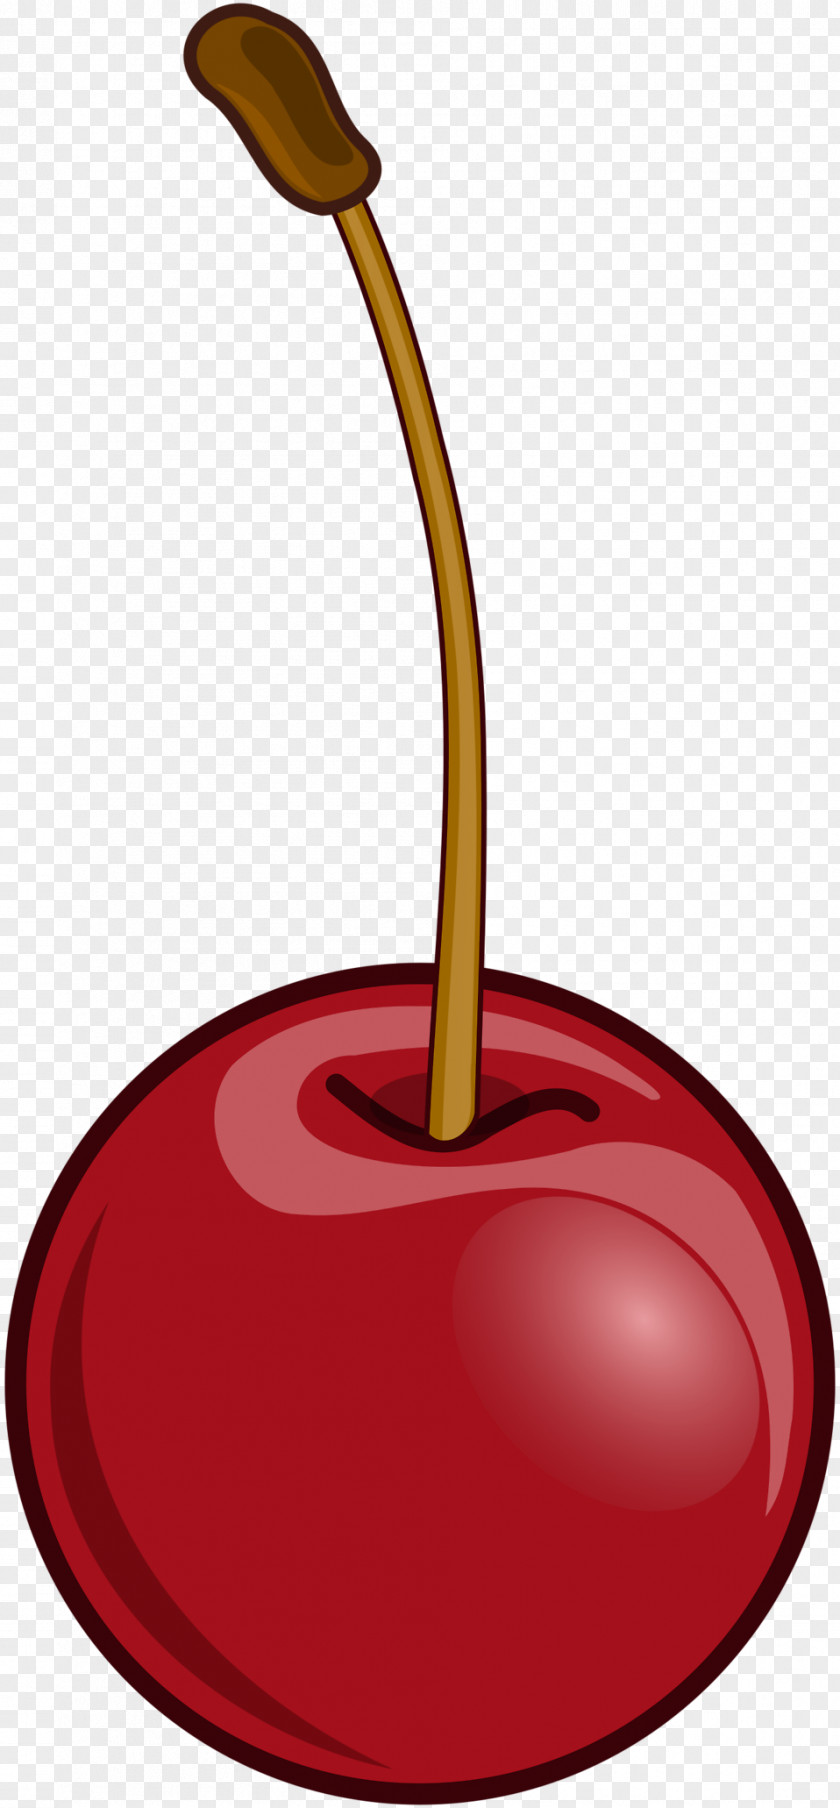 Cherry Pie Fruit Berry Clip Art PNG